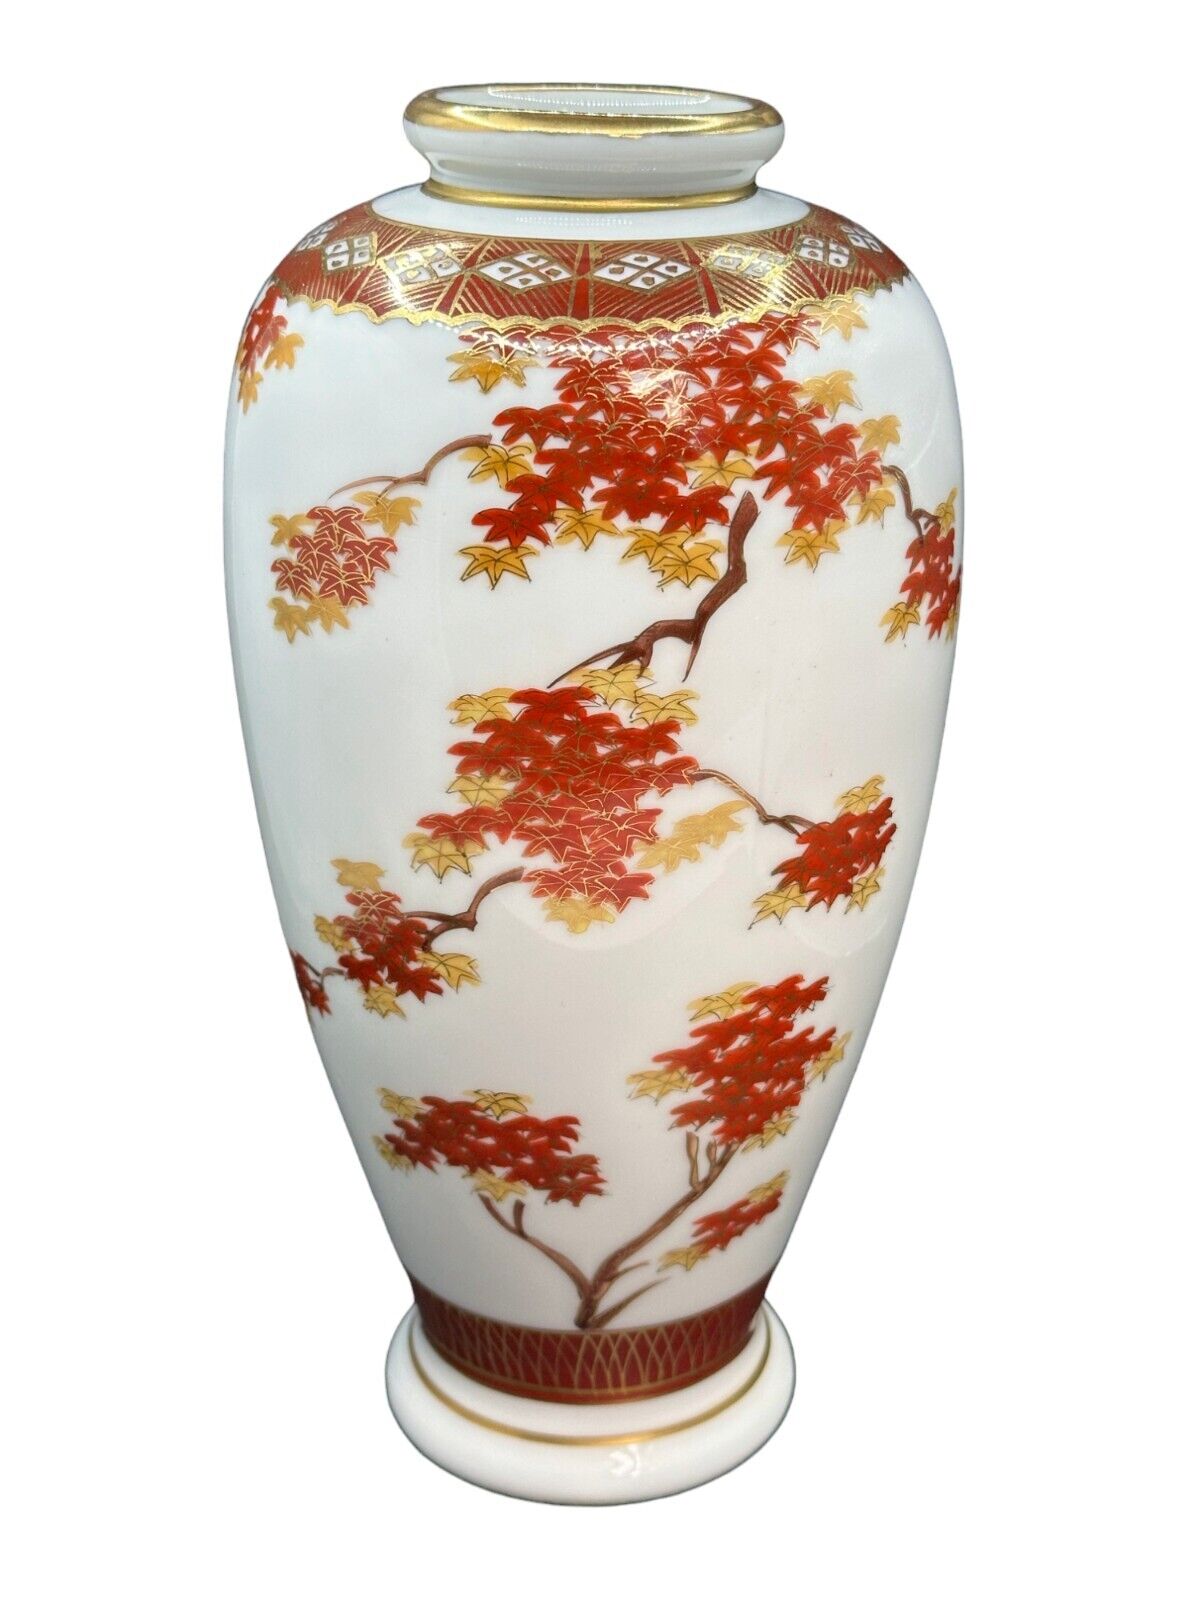 Satsuma Shimazu Taisho Pottery Porcelain Vase Autumn Maple Leaves Pattern